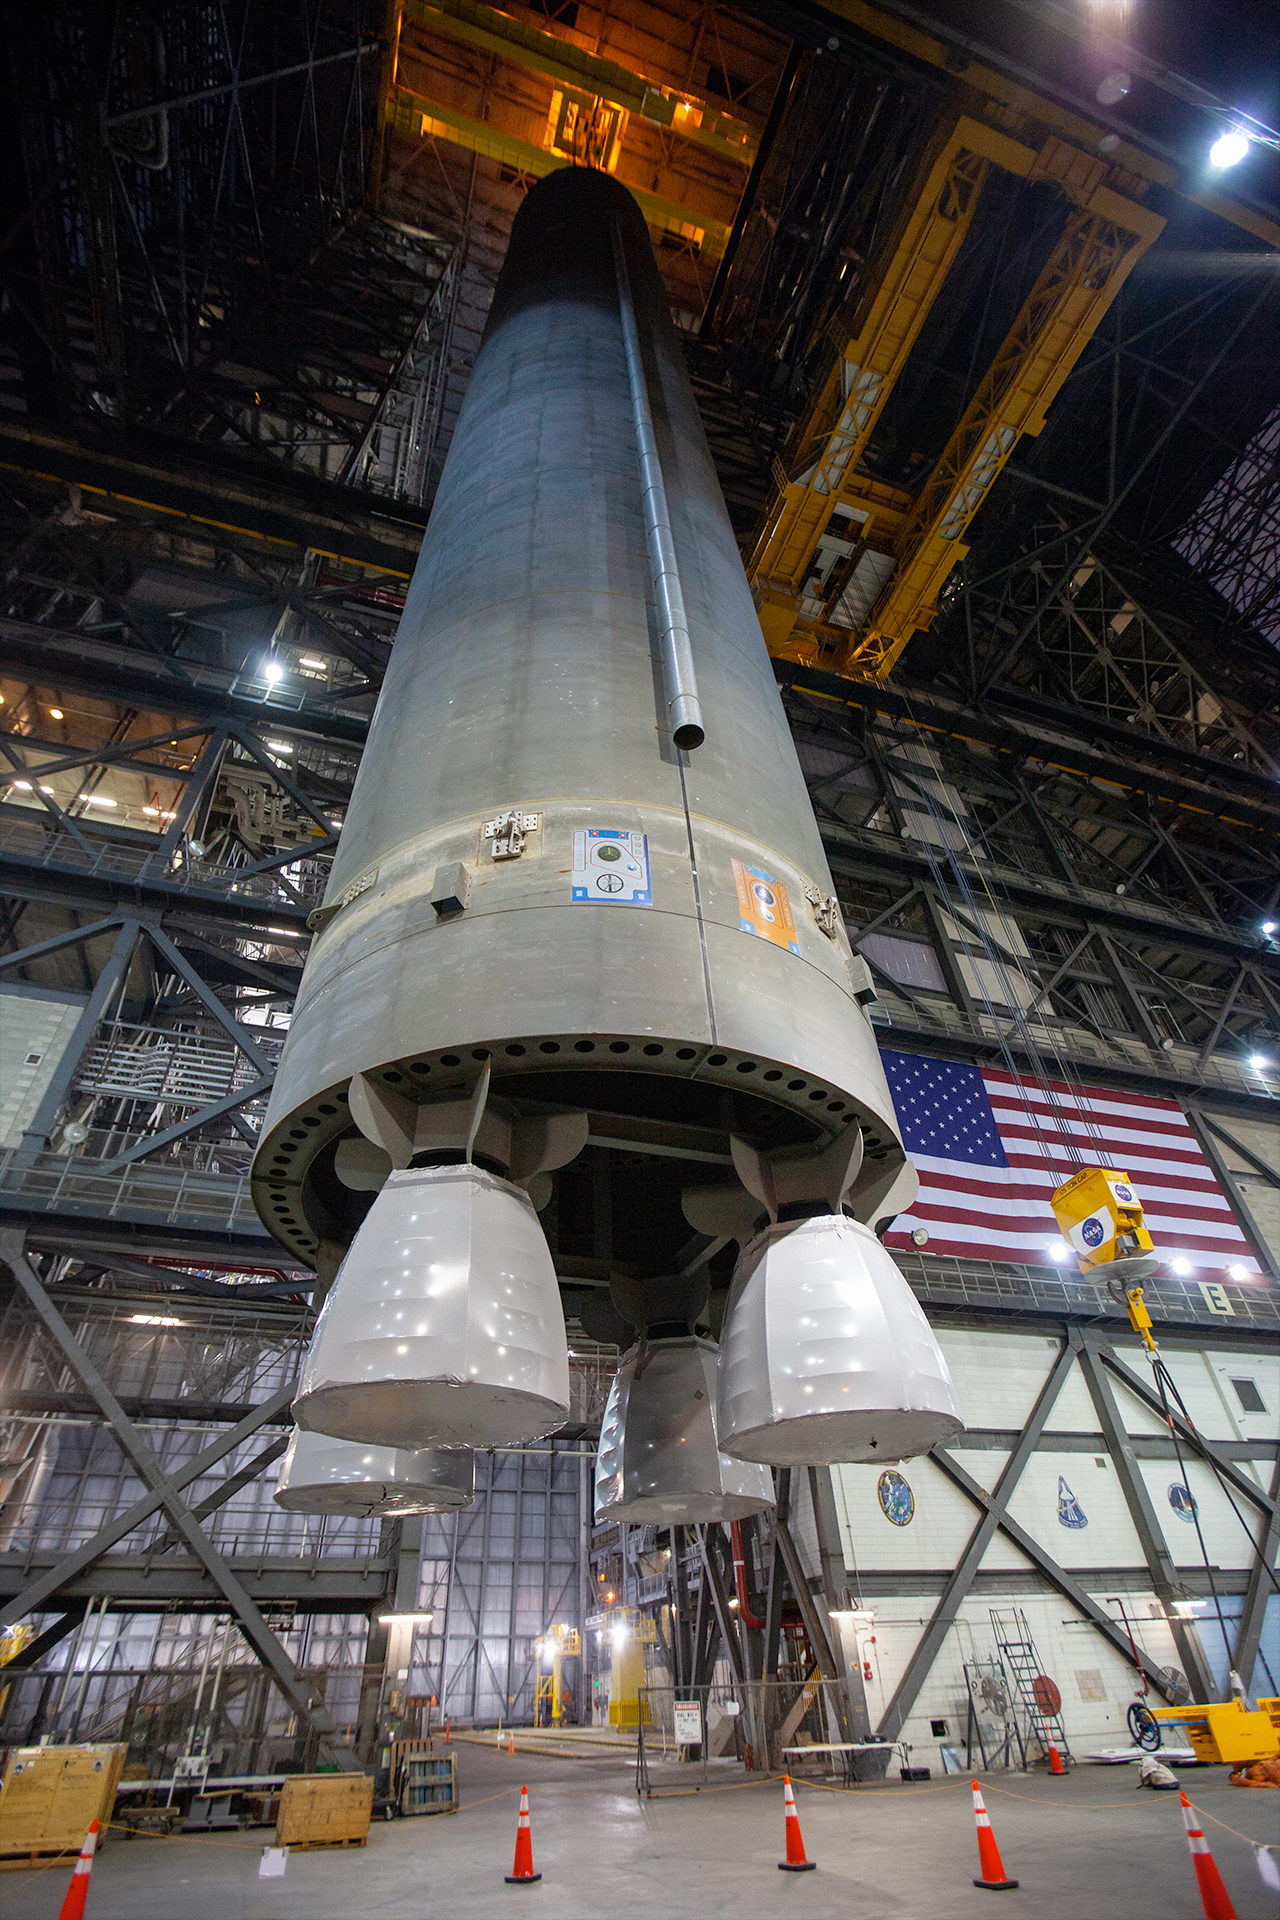 a massive rocket in a hangar